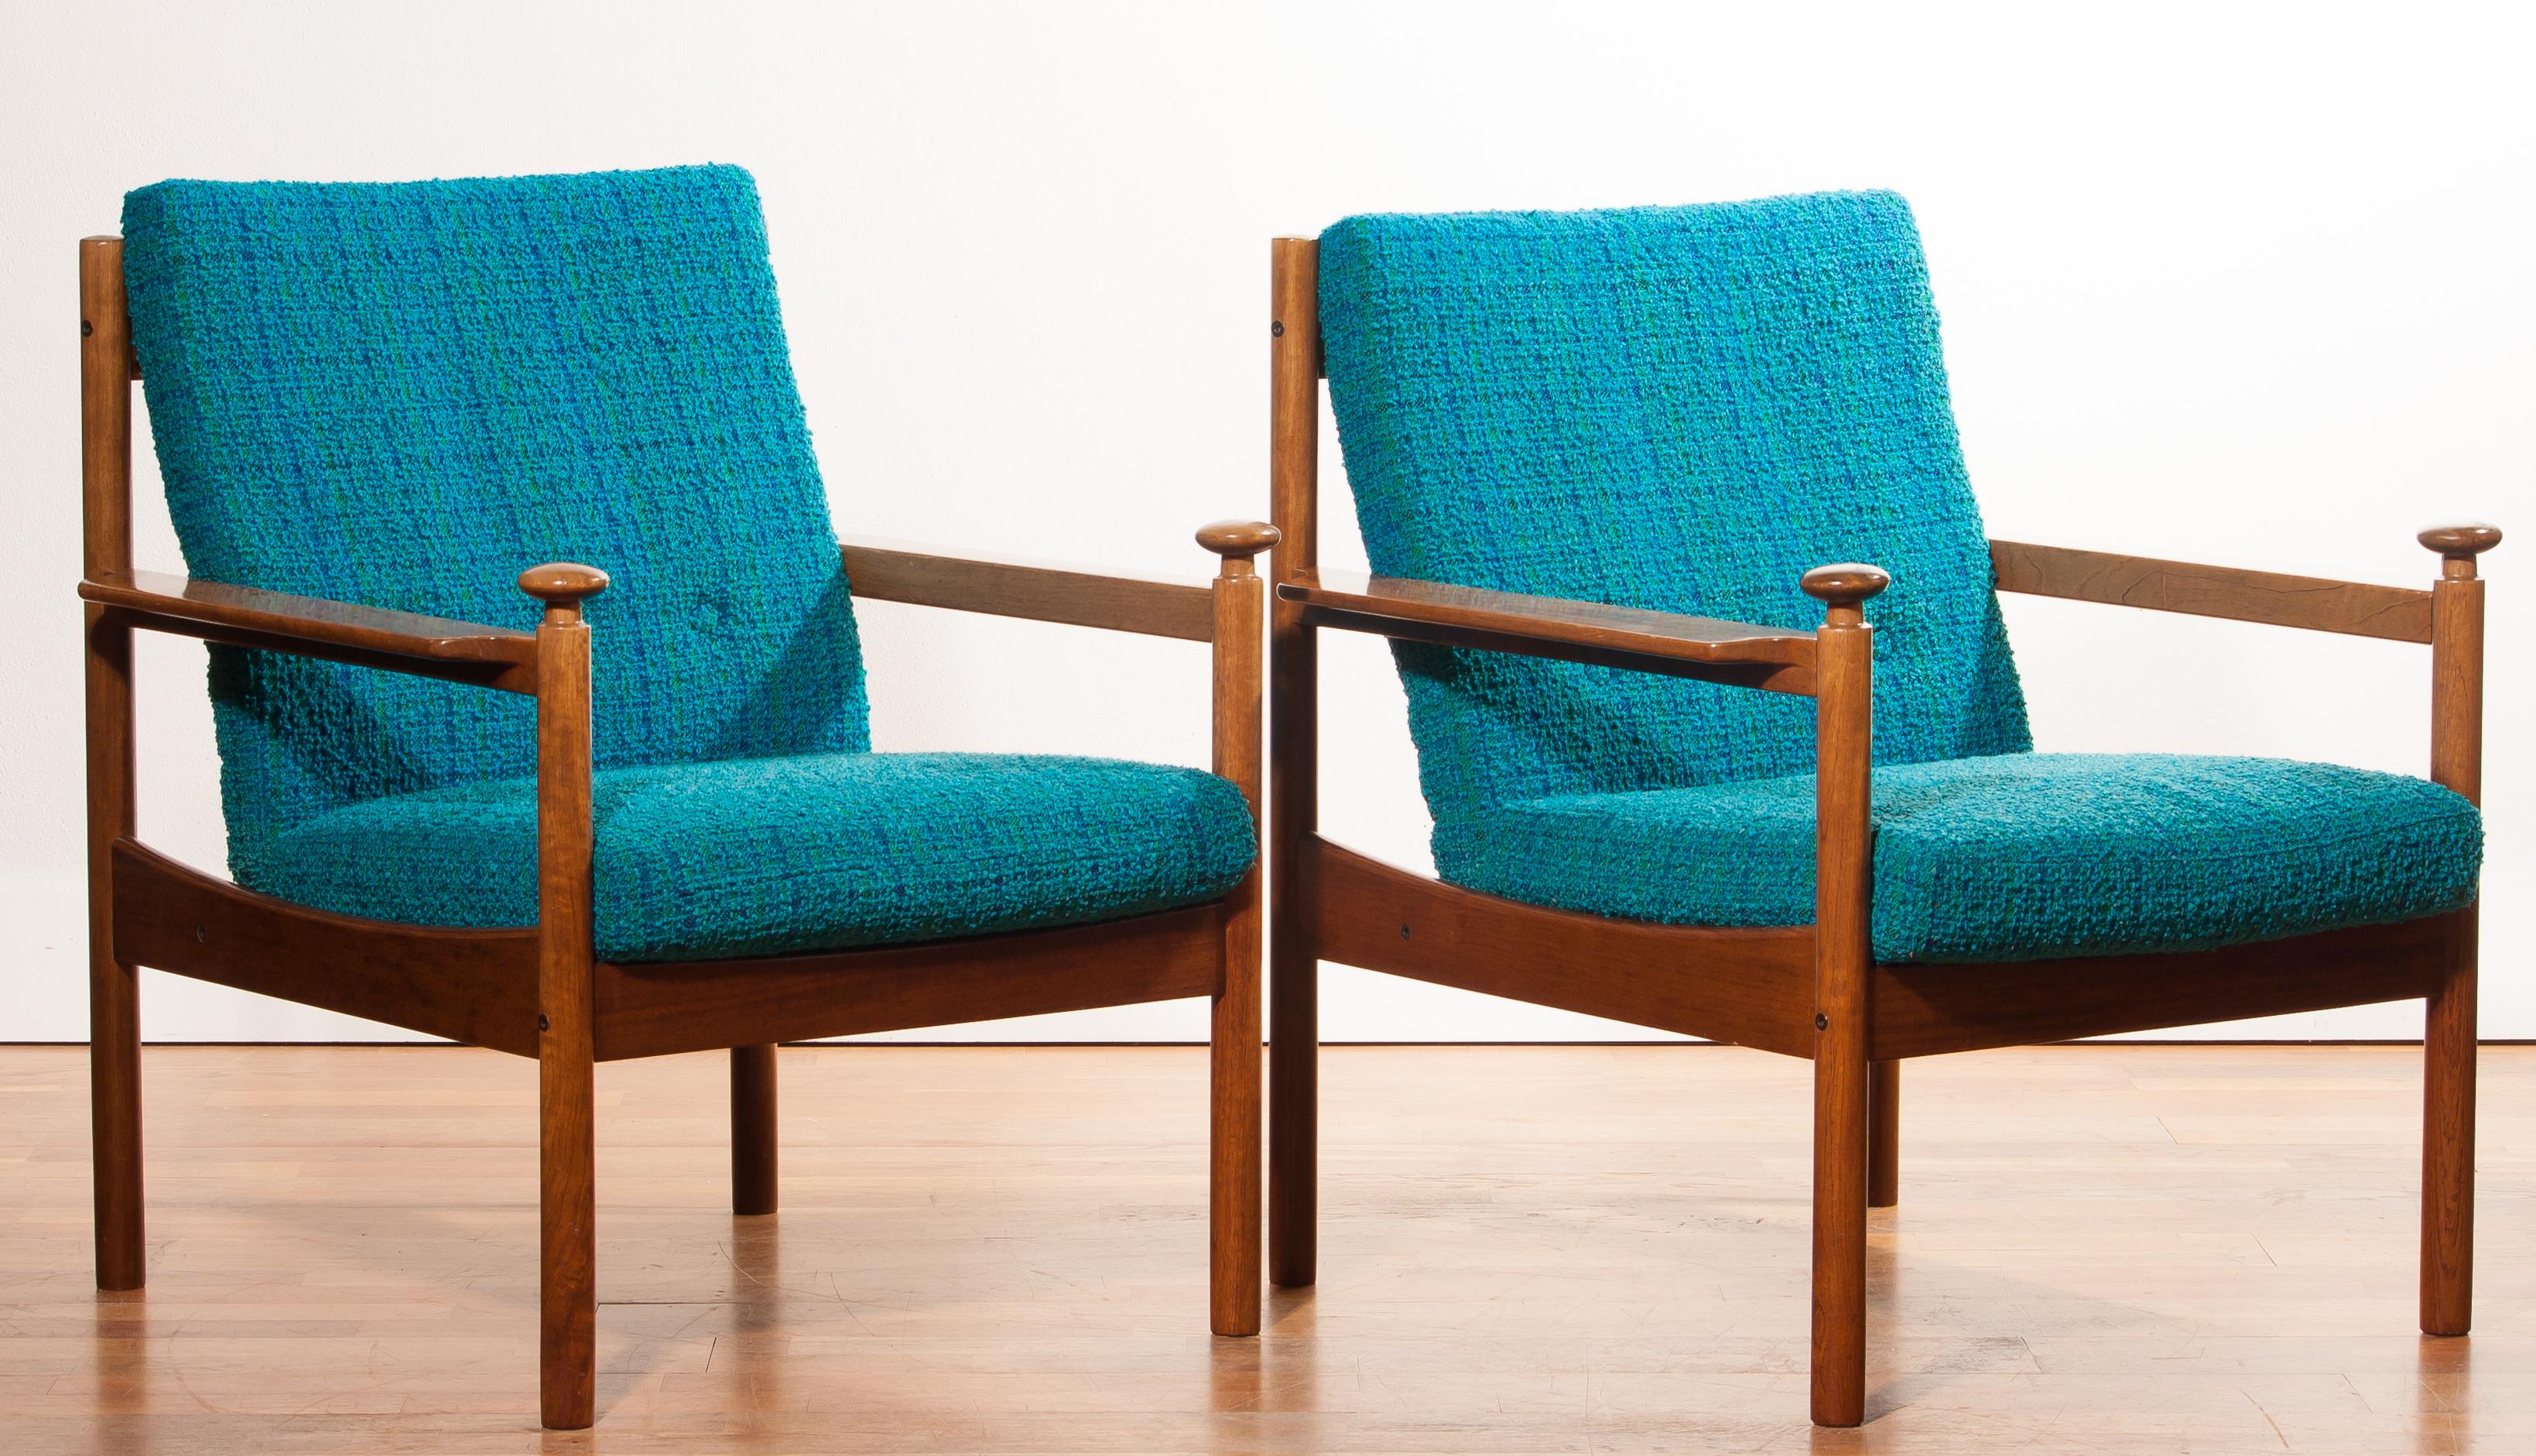 1950s, Pair of Blue Lounge Chairs by Torbjørn Afdal for Sandvik & Co. Mobler 4